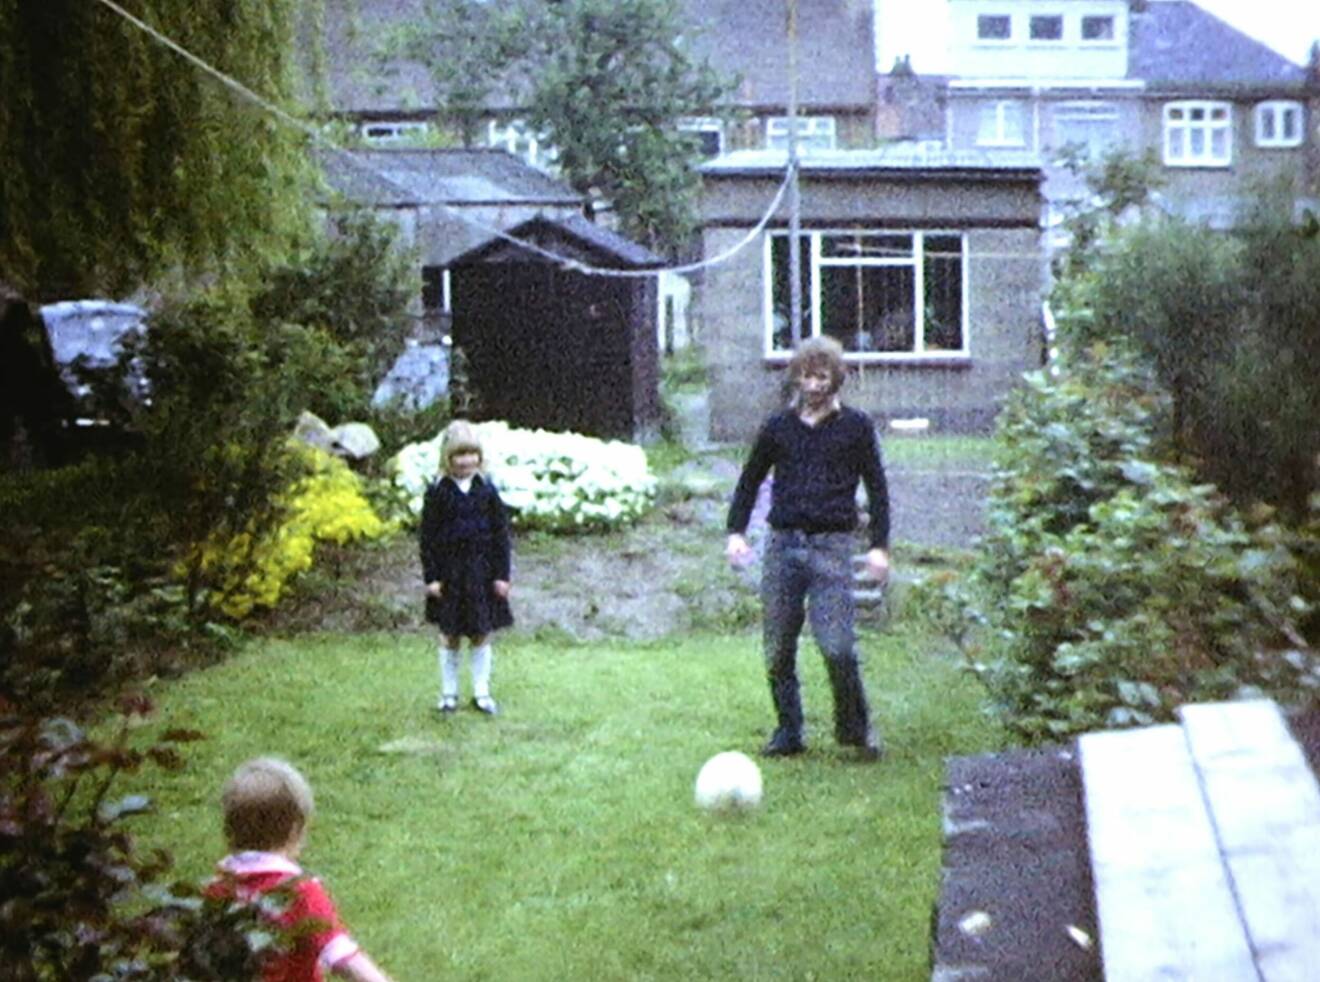 Bild från bandomen på David Beckham som spelar fotboll med sin pappa hemma i trädgården.